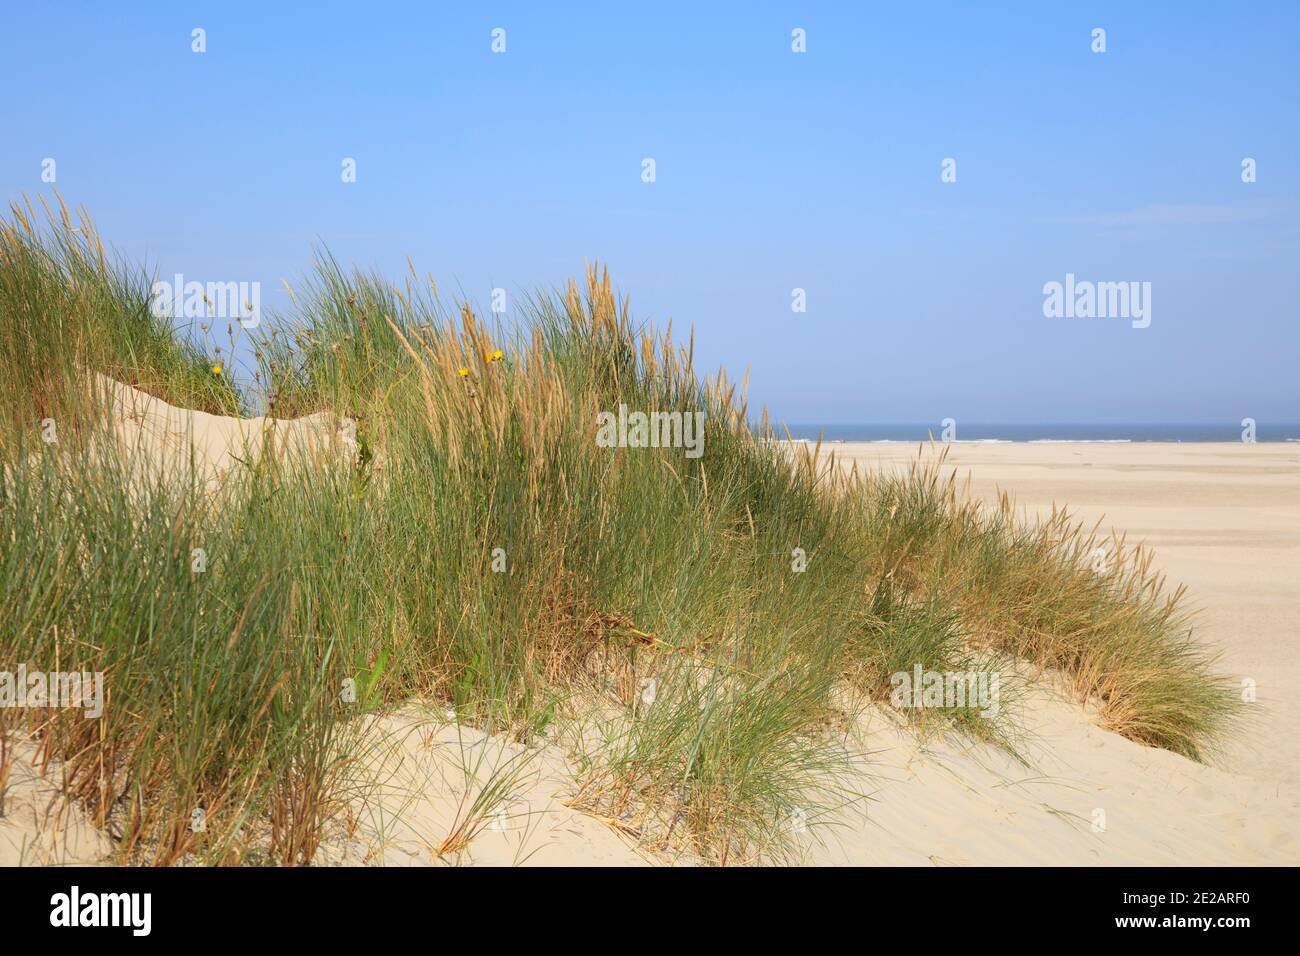 Strandgras am Nordstrand, Borkum, Ostfriesische Insel, Niedersachsen, Deutschland, Europa Stock Photo